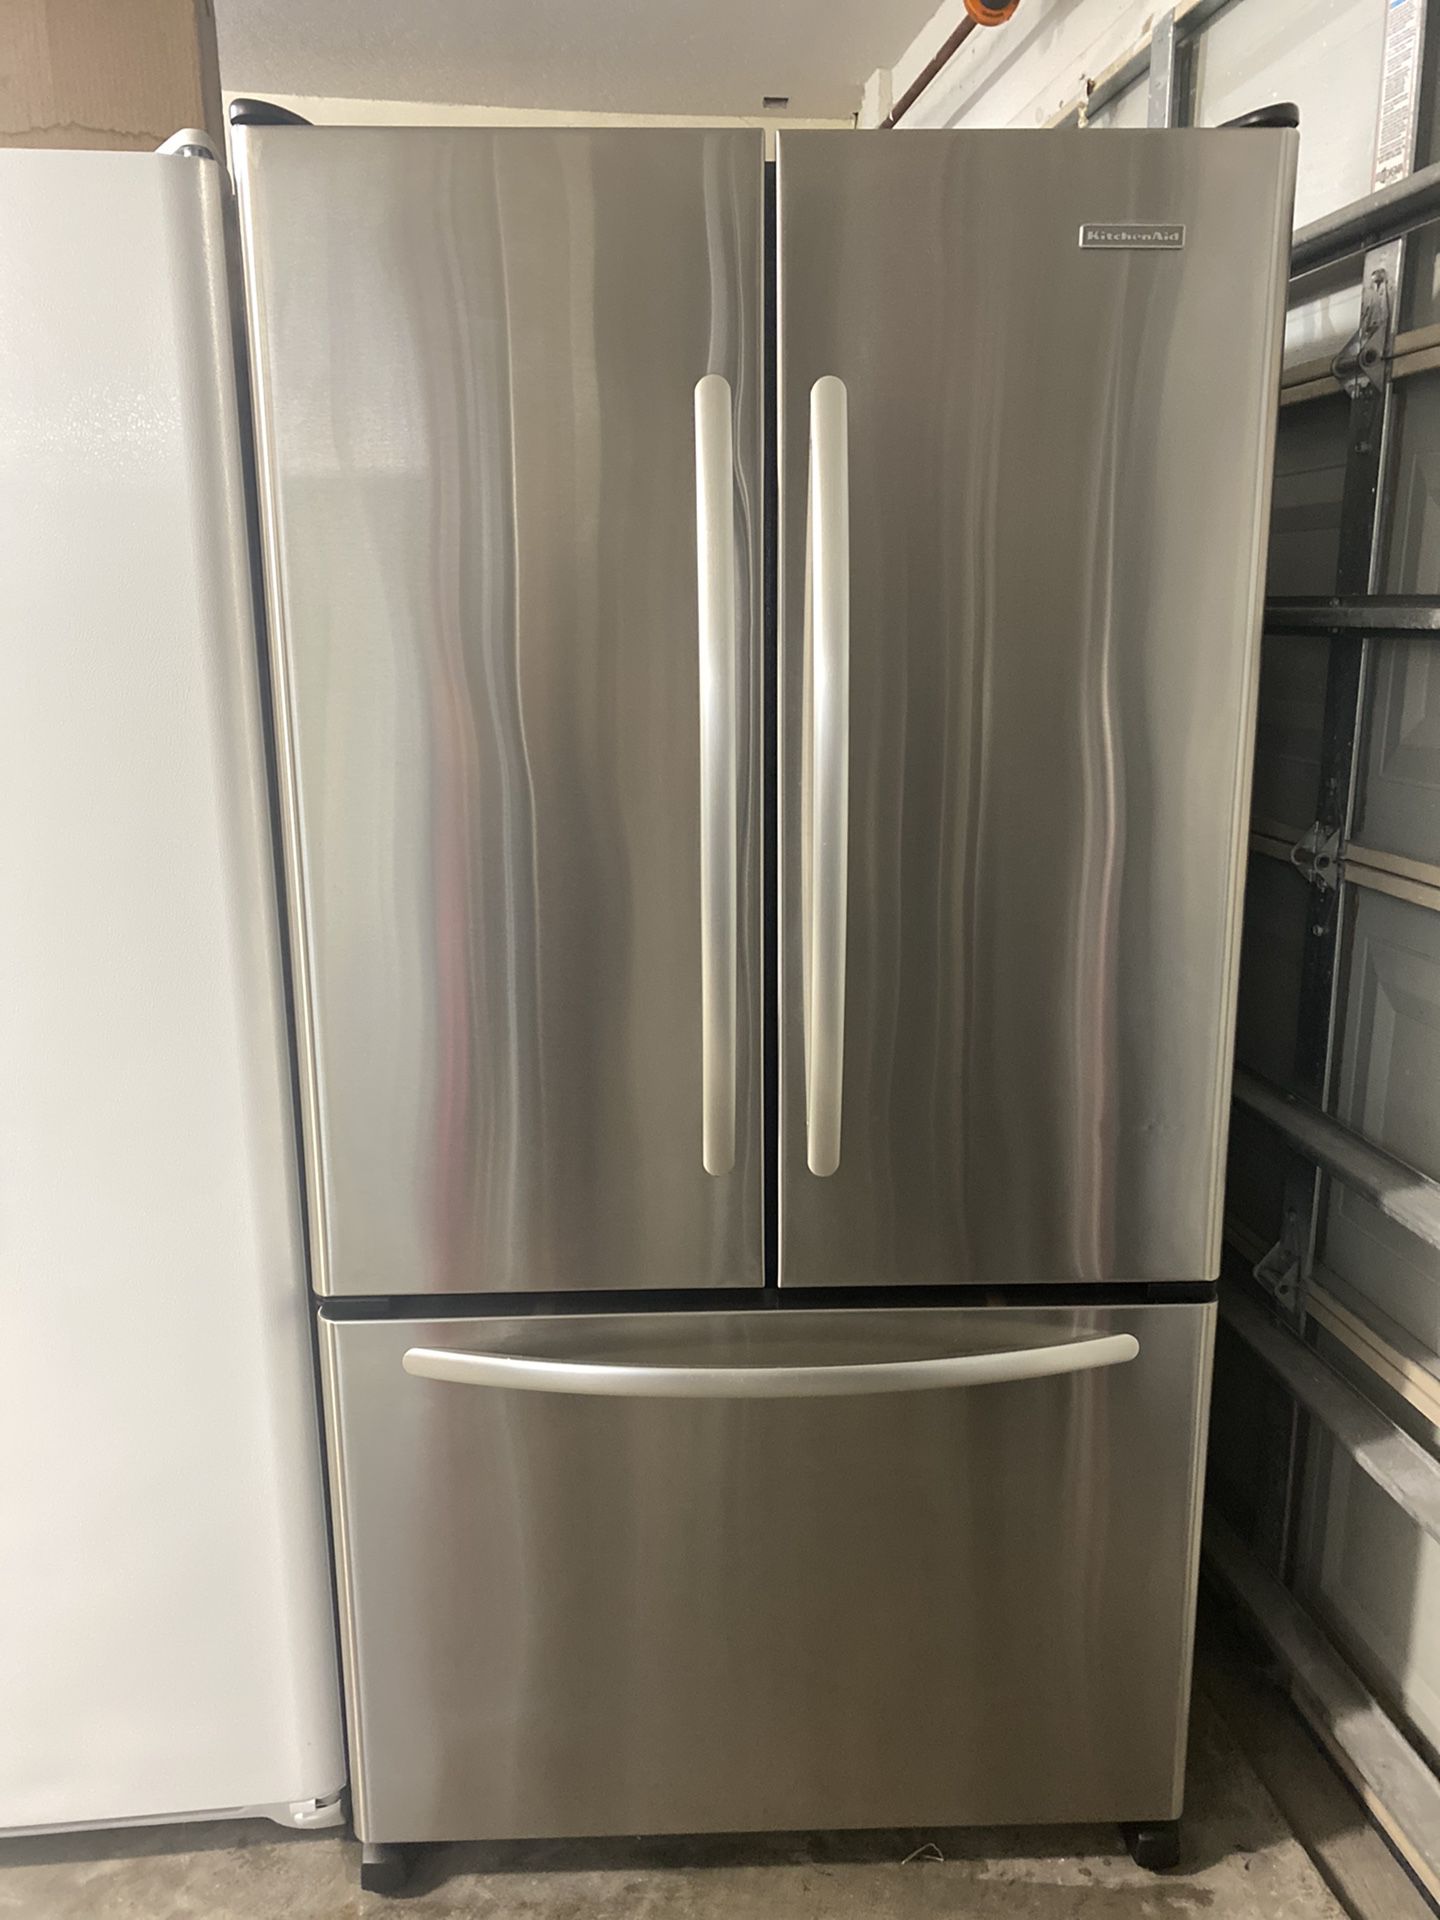 Refrigerator Kitchen Aid Counter Depth